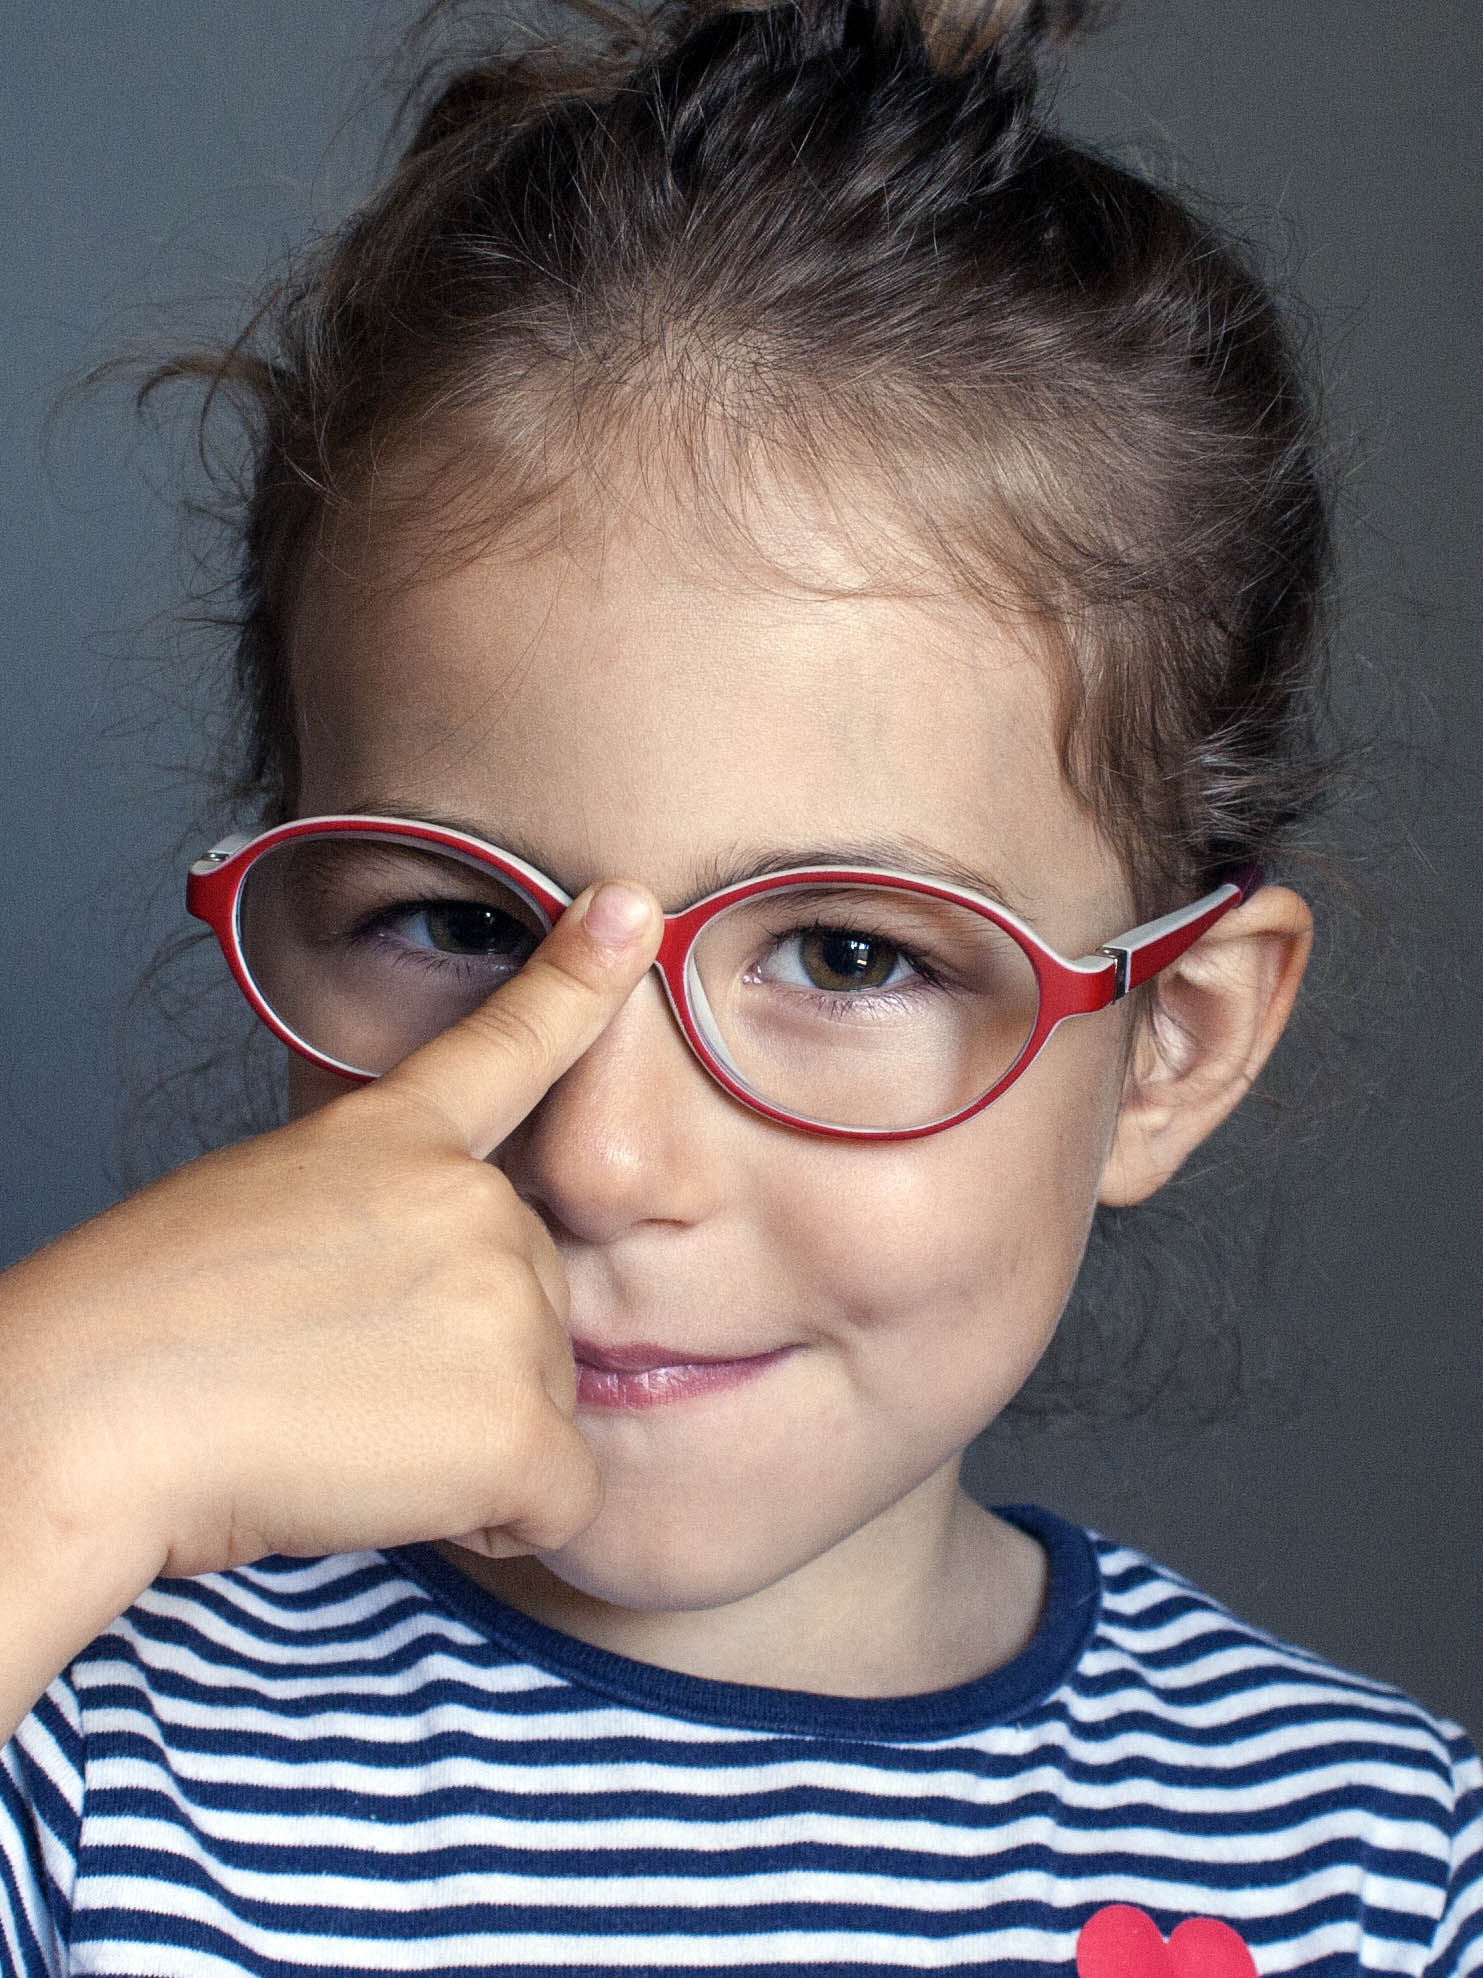 little girl adjusting her glasses with her finger